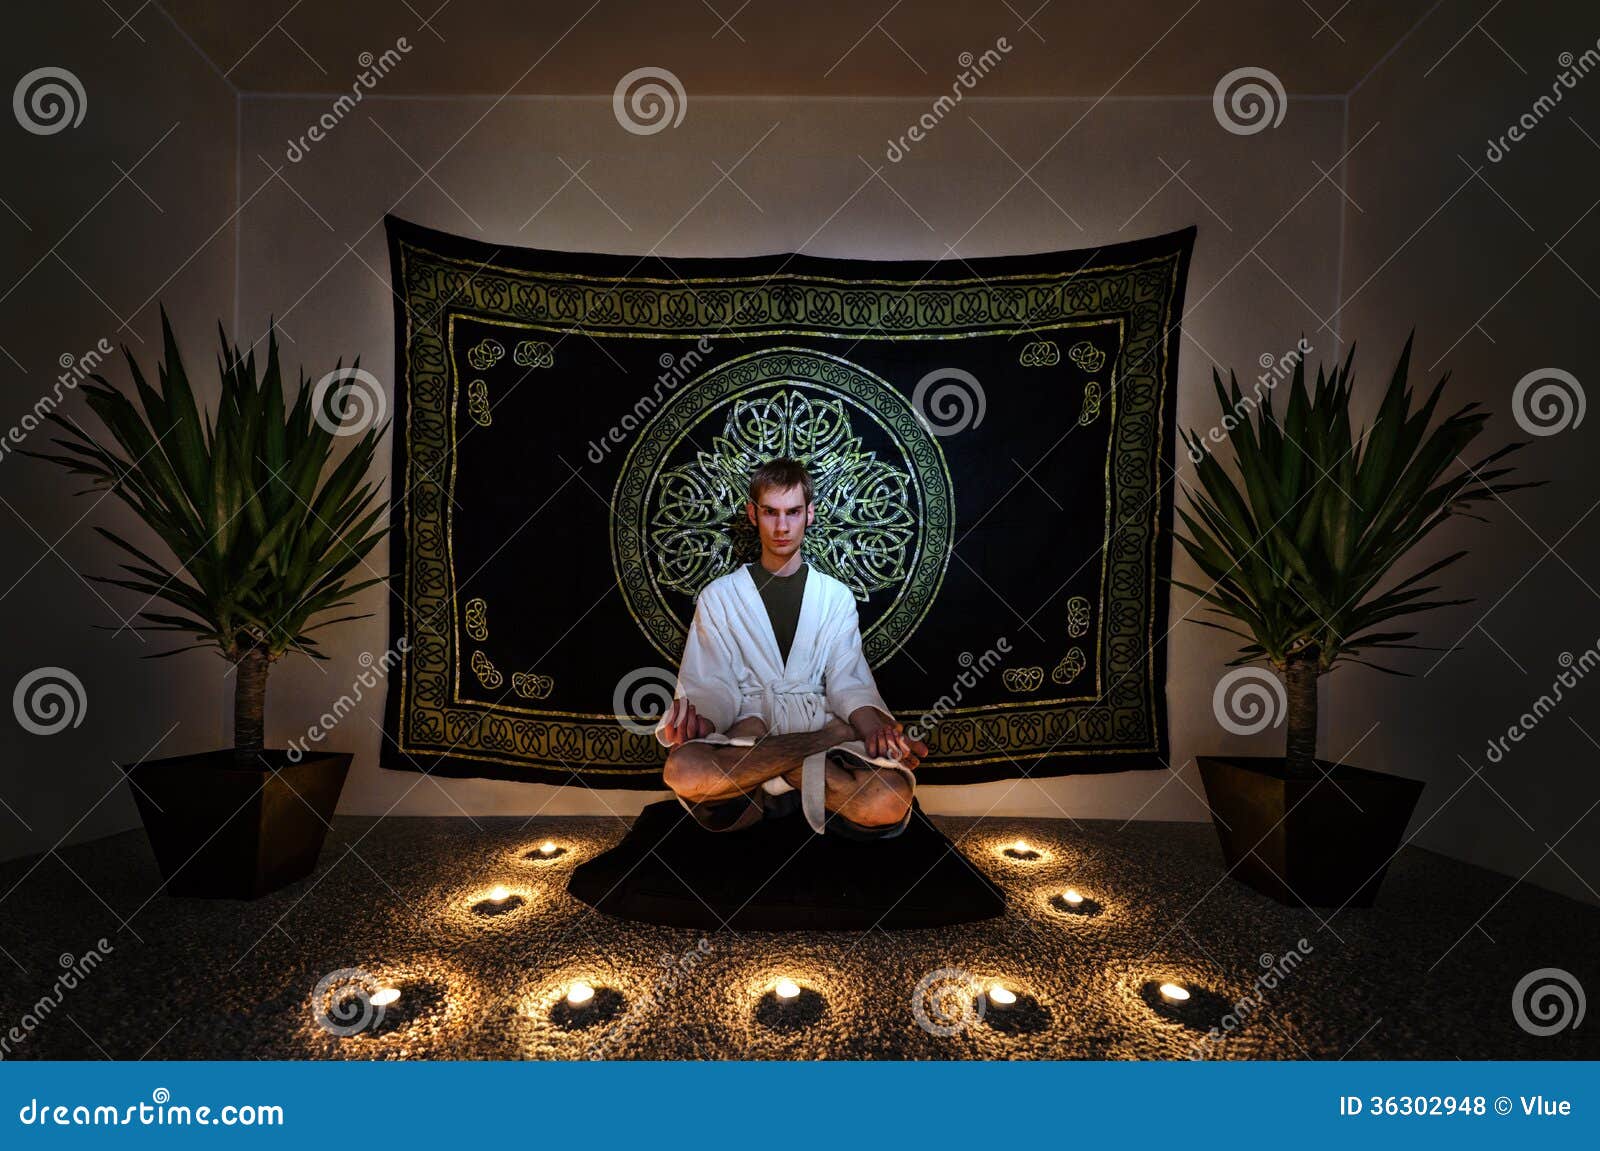 Un homme s'asseyant sur un zafu avec dedans une robe longue blanche regardant fixement intensément dans l'appareil-photo avec ses yeux ouvrent faire un rituel de méditation. Il y a des usines, des bougies, et une tapisserie derrière lui sur le mur.